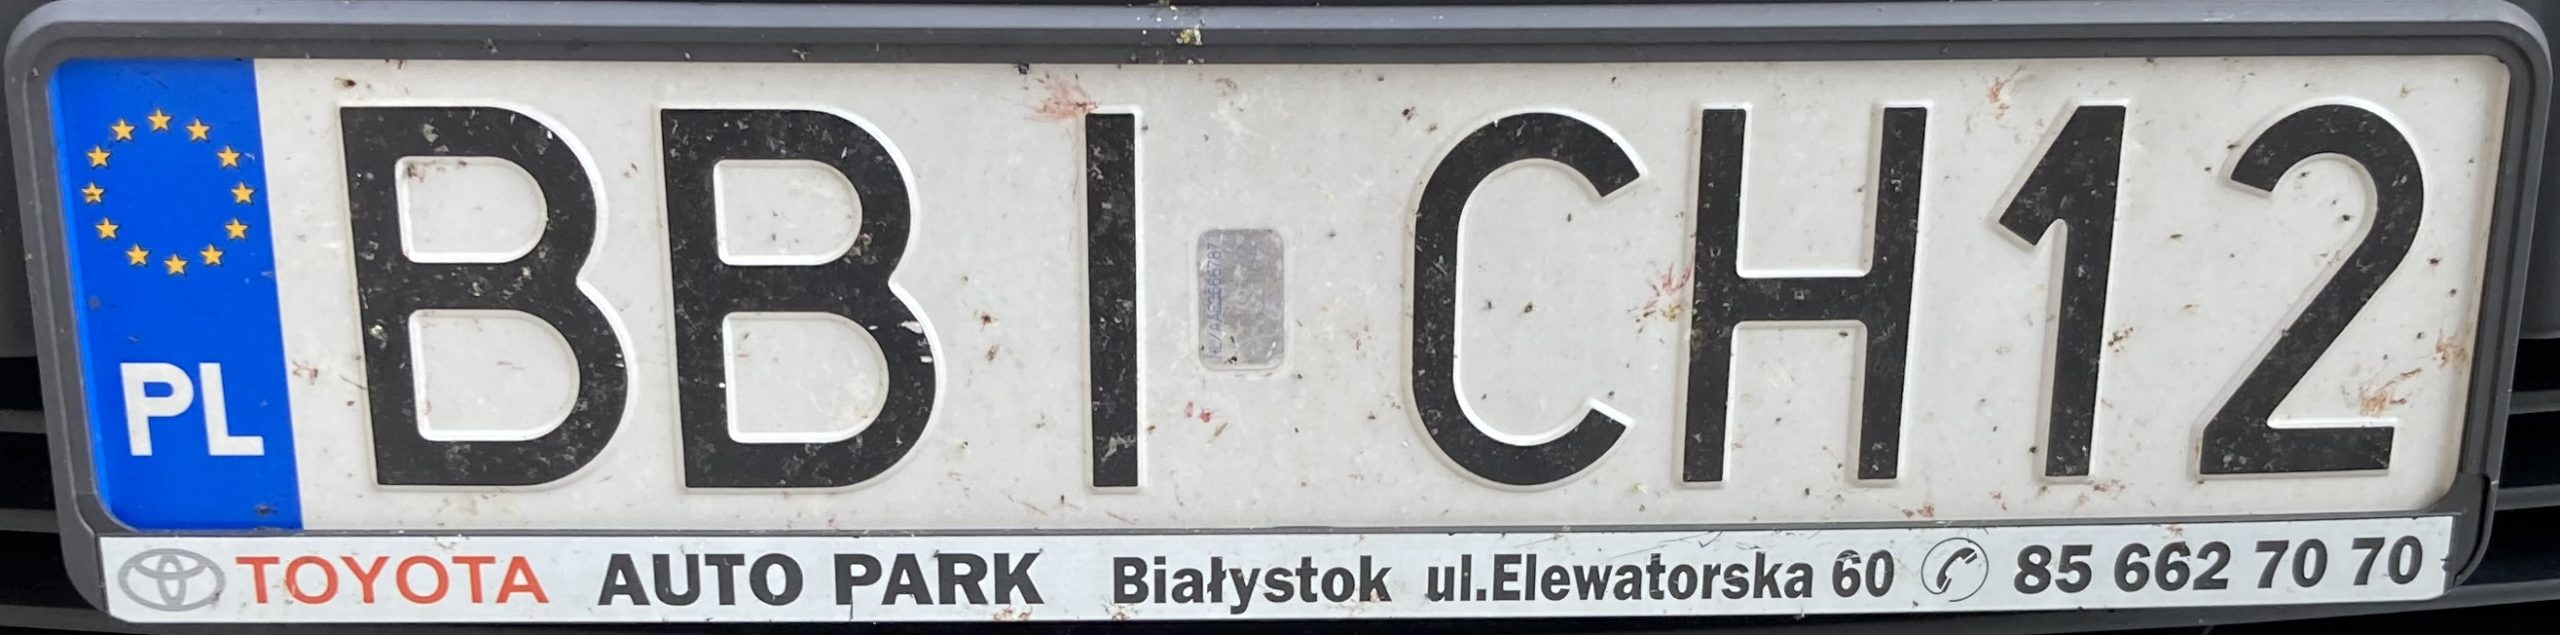 Registrační značka Polsko – BBI – Bielsk Podlaski, foto: www.podalnici.cz